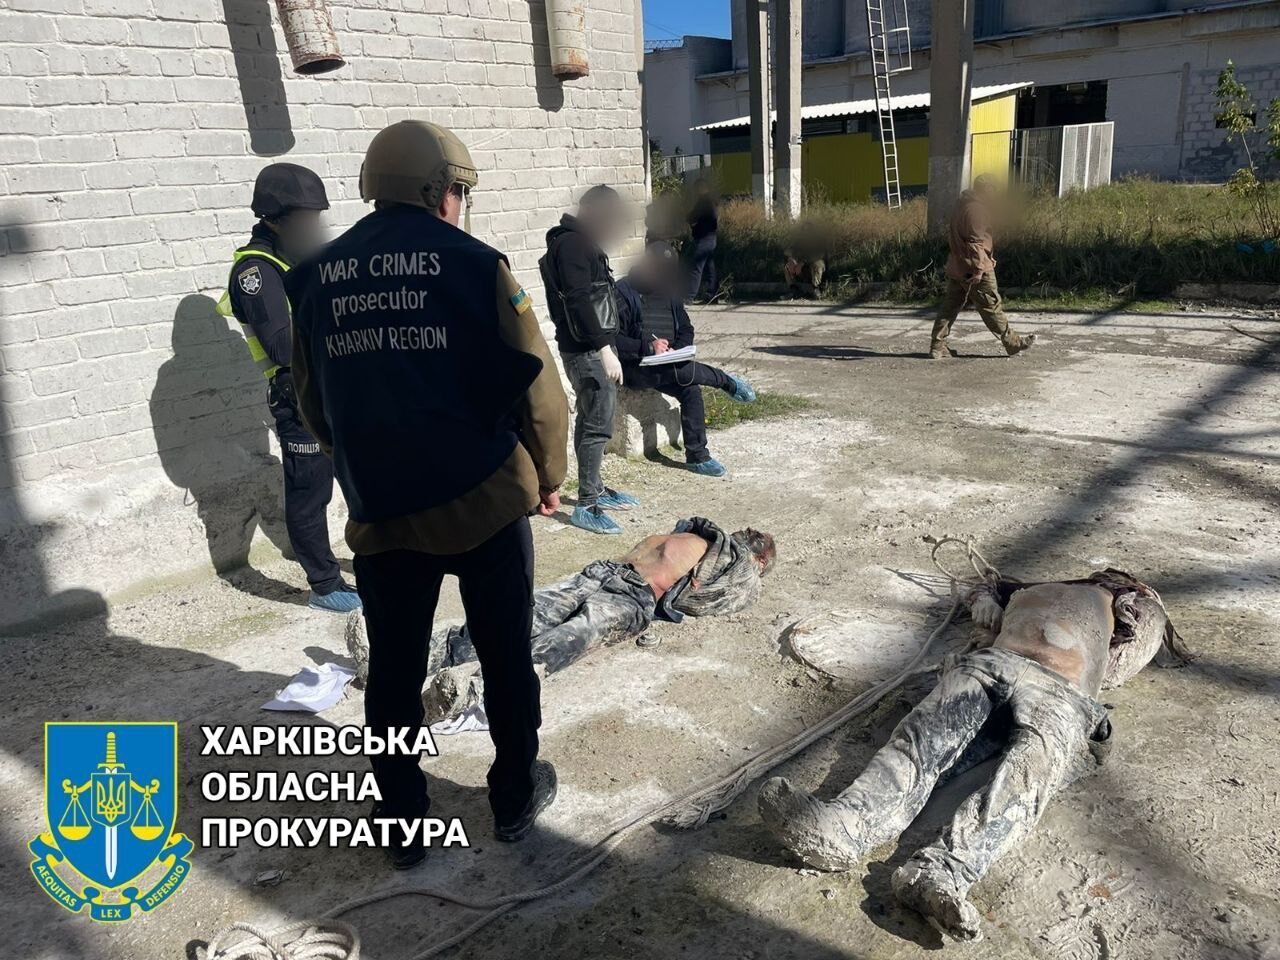 На Харьковщине обнаружили тела убитых оккупантами украинцев: связаны руки и следы пыток. Фото